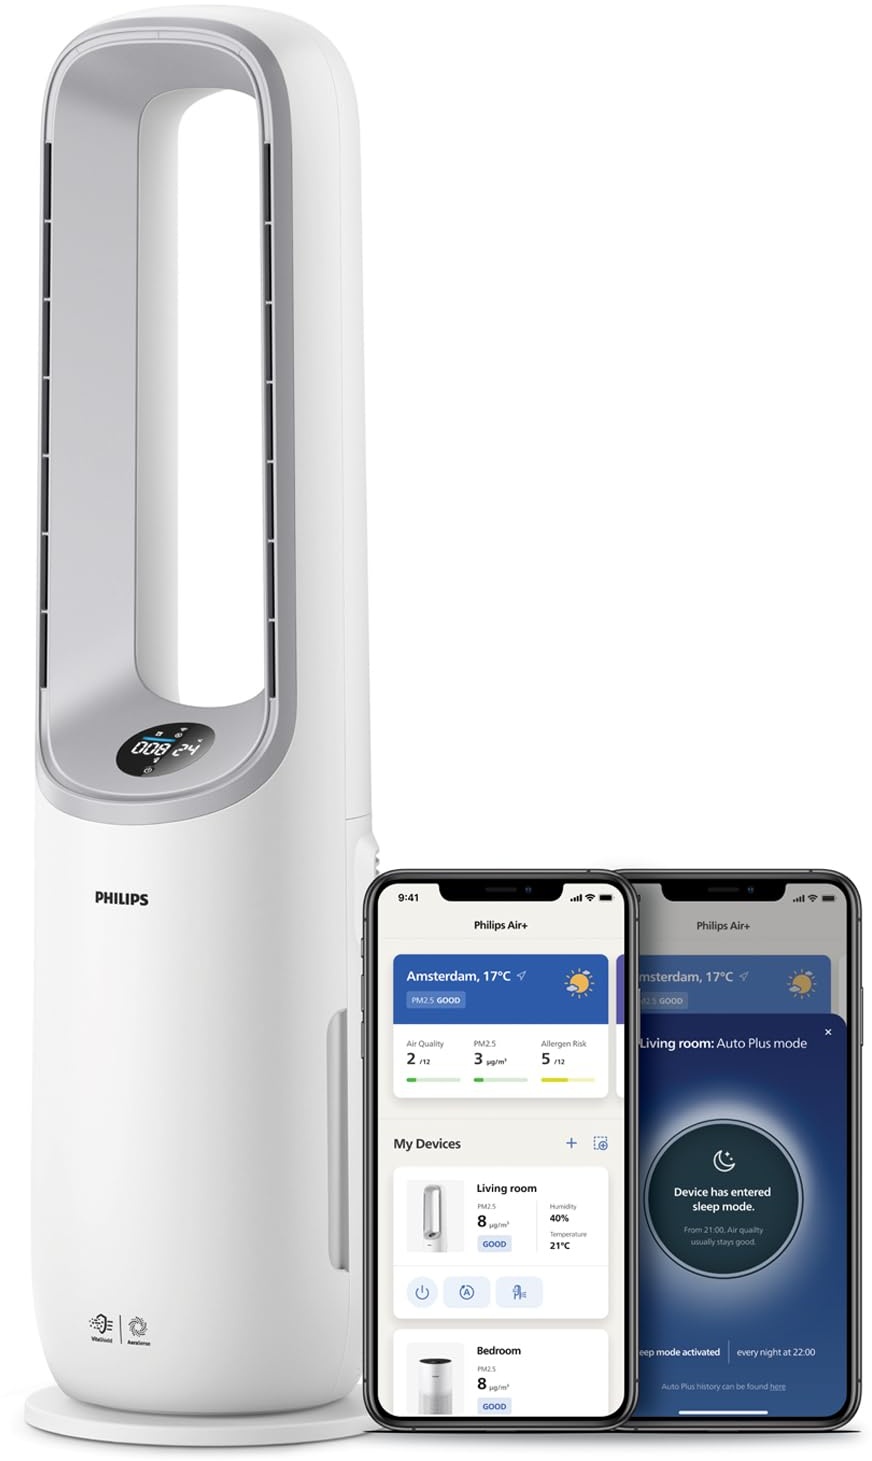 Philips Air Performer 2-in-1: Luftreiniger und Kühlgebläse - Reinigt 70 m2, Entfernt 99,97% der Allergene und Schadstoffe. HEPA-Filter, Intelligente Sensoren, Alexa, App. (AMF765/10)